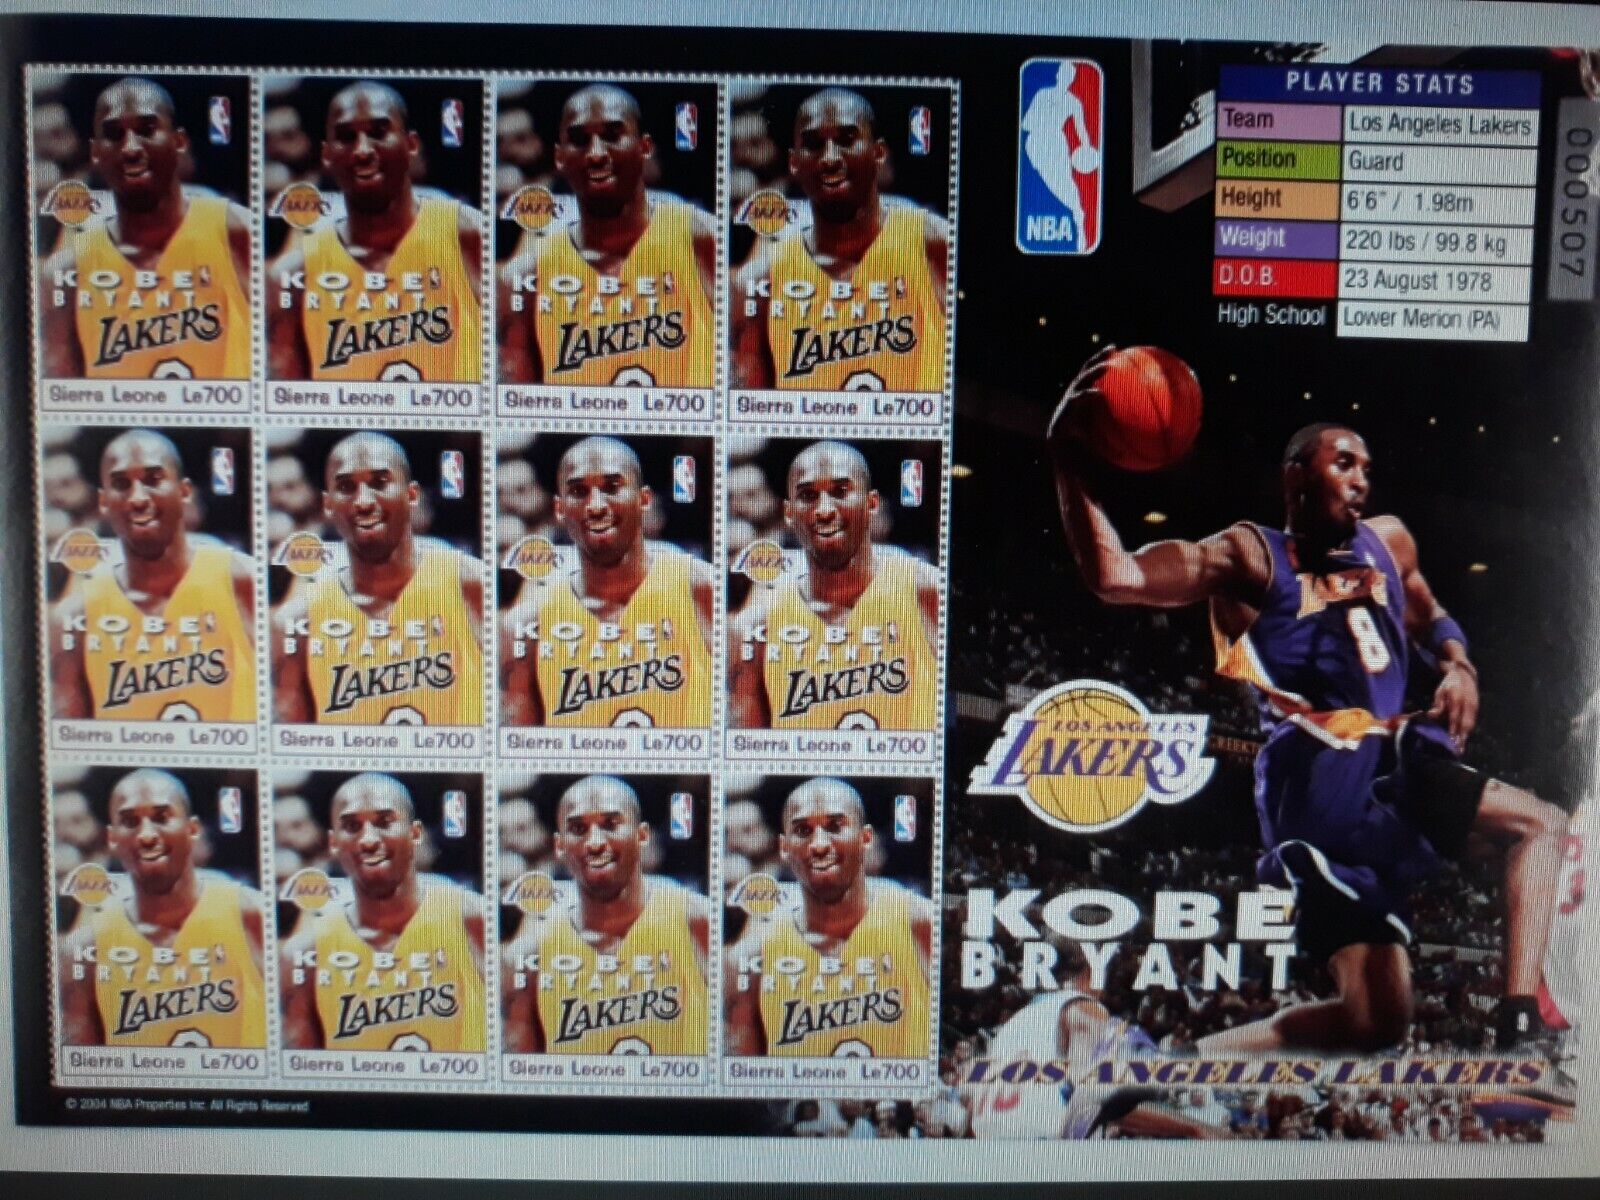 2004 Sierra Leone Uncut Stamp Sheet Of 12 Stamps Kobe Bryant (la Lakers, Died 20